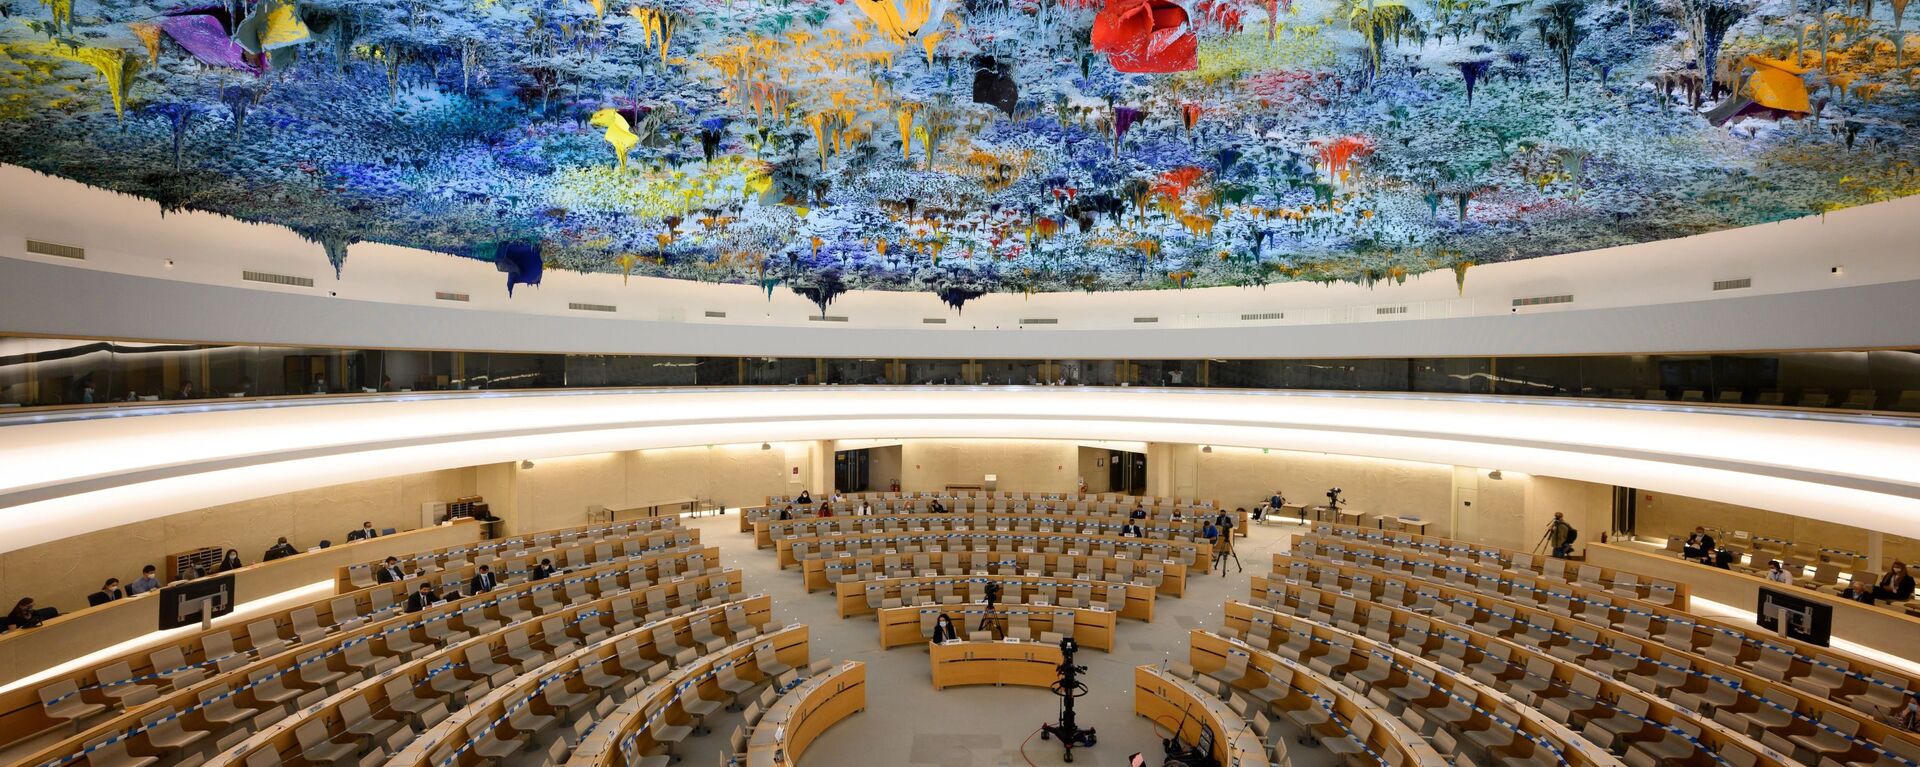 Зал заседания сессии Совета ООН по правам человека в Женеве. Архивное фото - Sputnik Кыргызстан, 1920, 14.10.2021